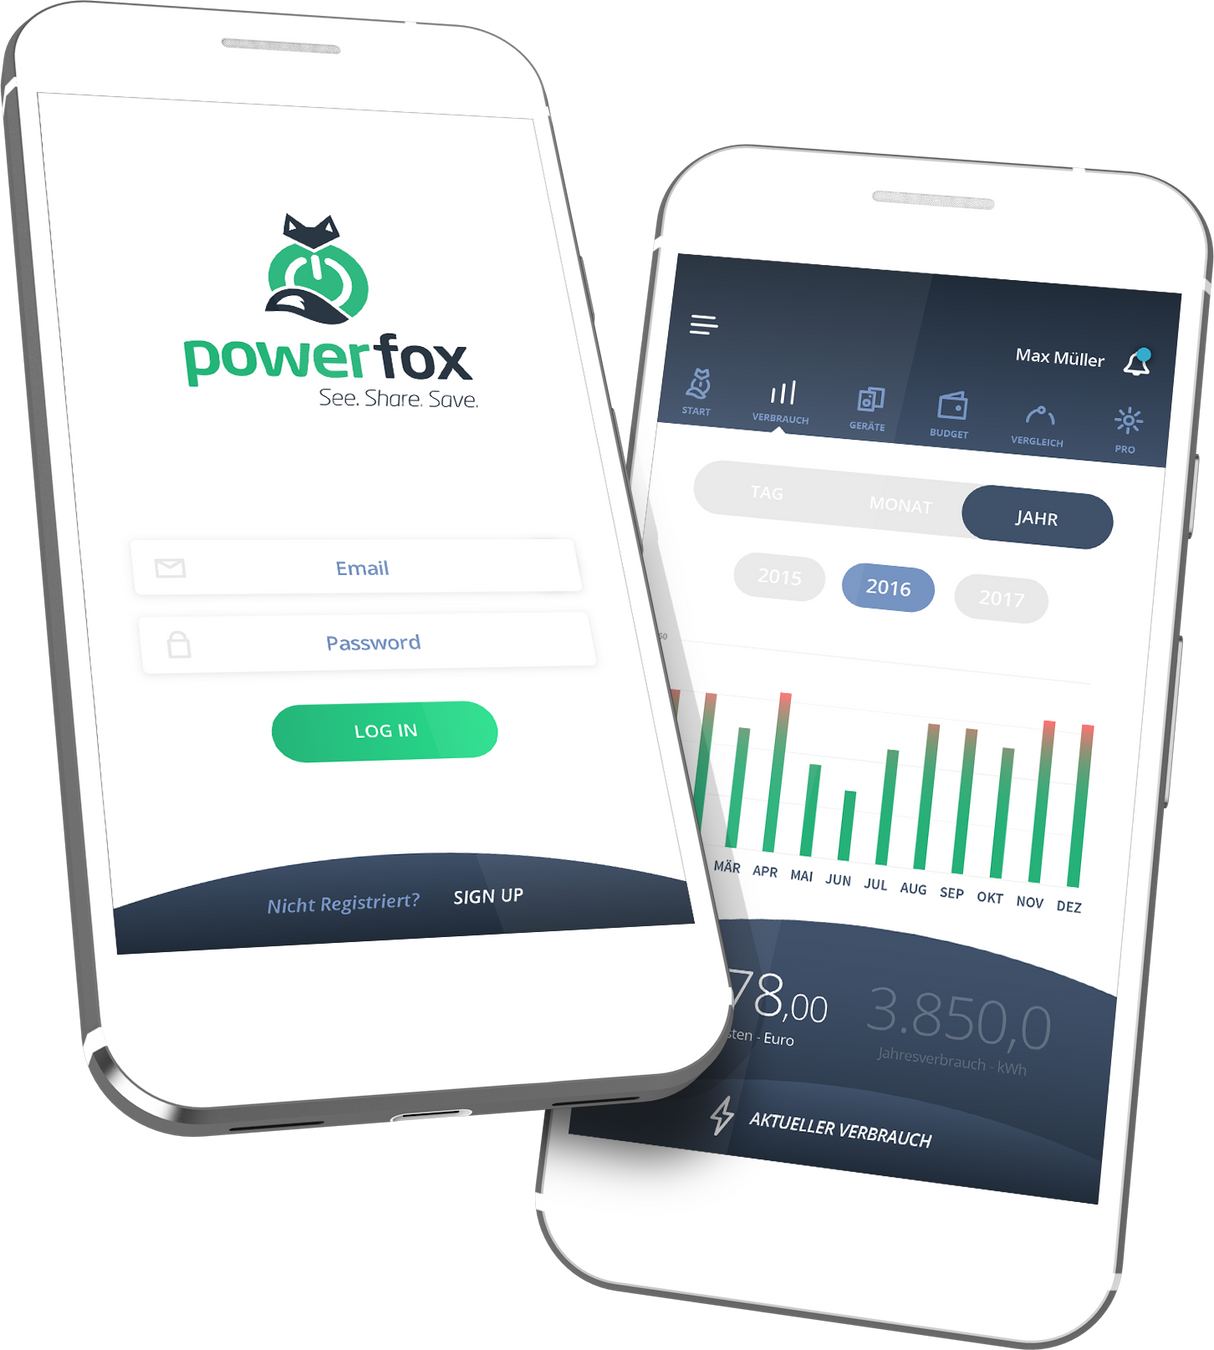 Powerfox poweropti - Ihr Energieverbrauch auf einen Blick